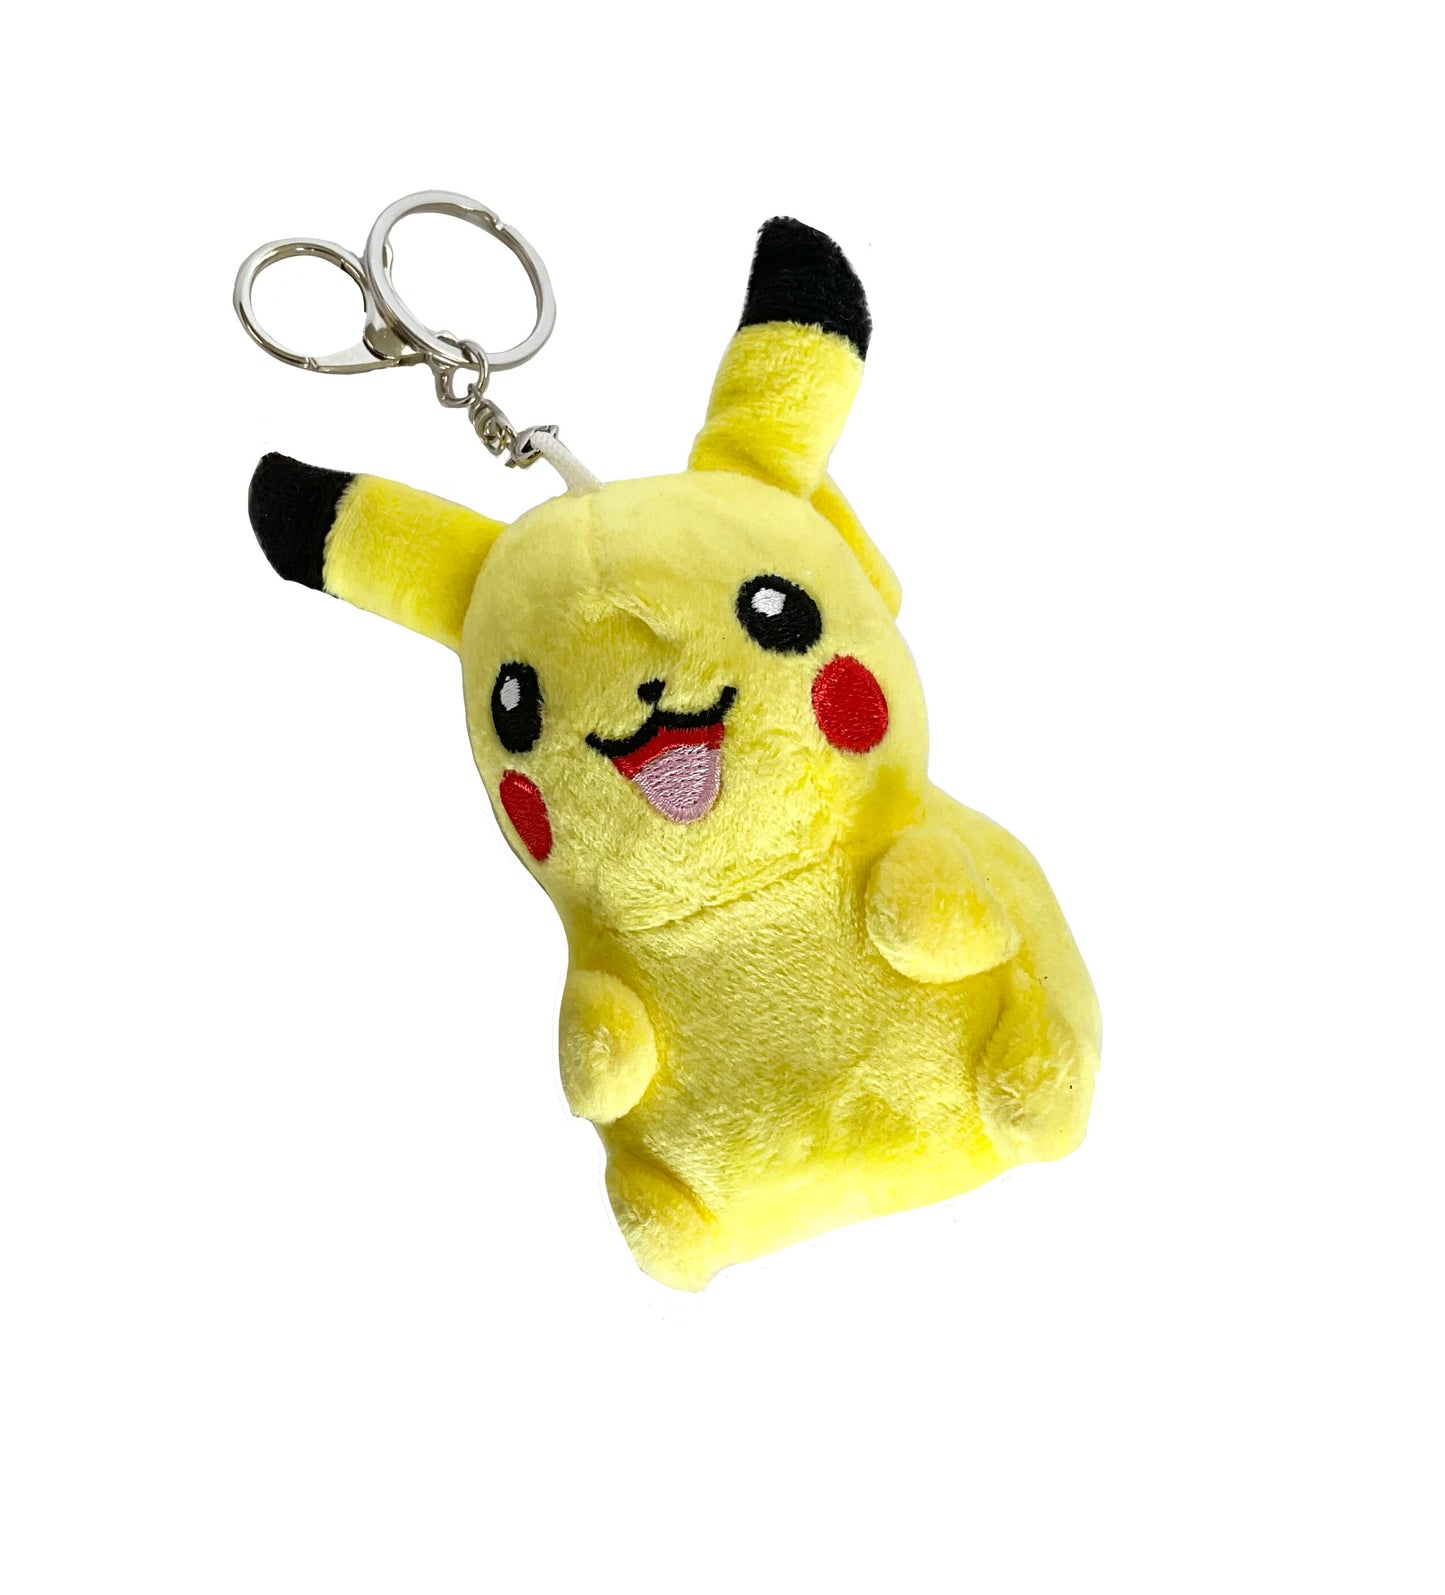 Pikachu Plush Toy Keychain #89-0304236